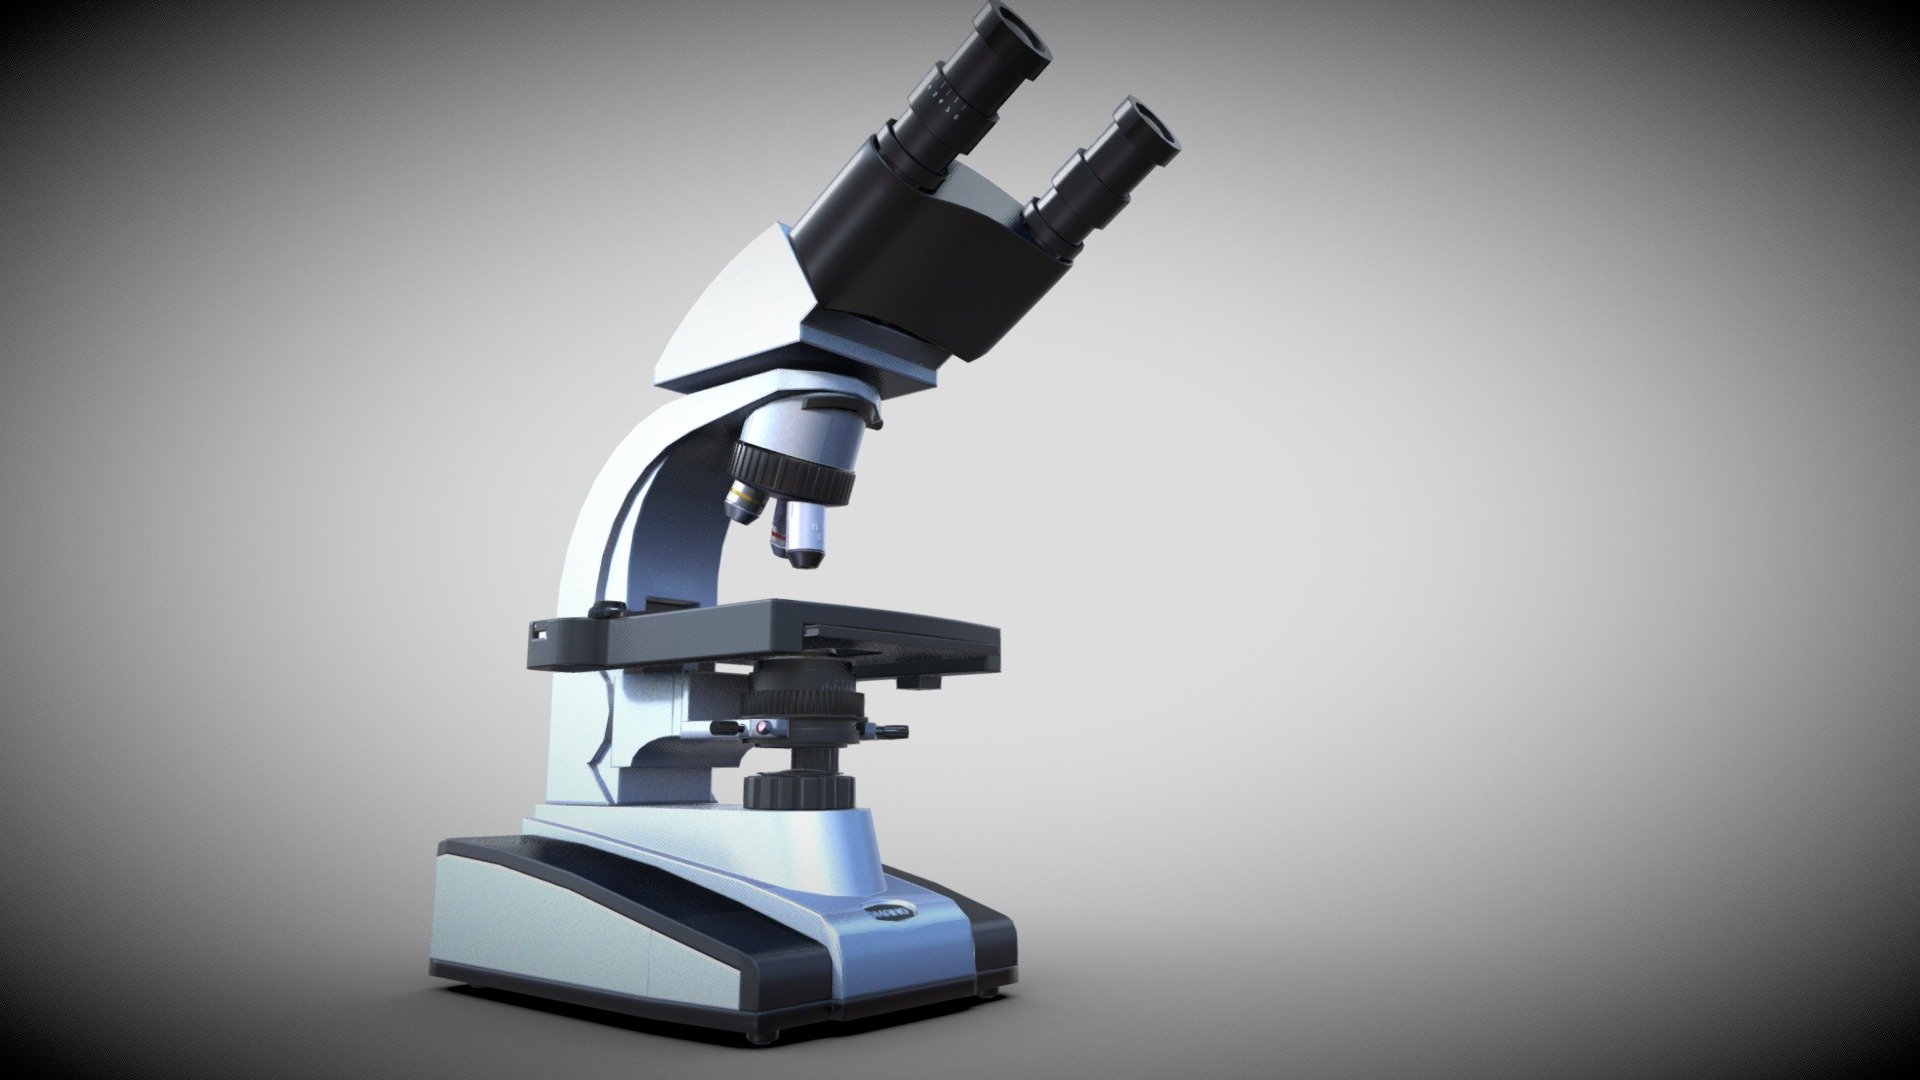 Modelo hard surface ( pero sin el modificador aplicado) de un microscopio random

Hardsurface model (but no modifier applied) - The microscope - 3D model by AnaDelgado 3d model